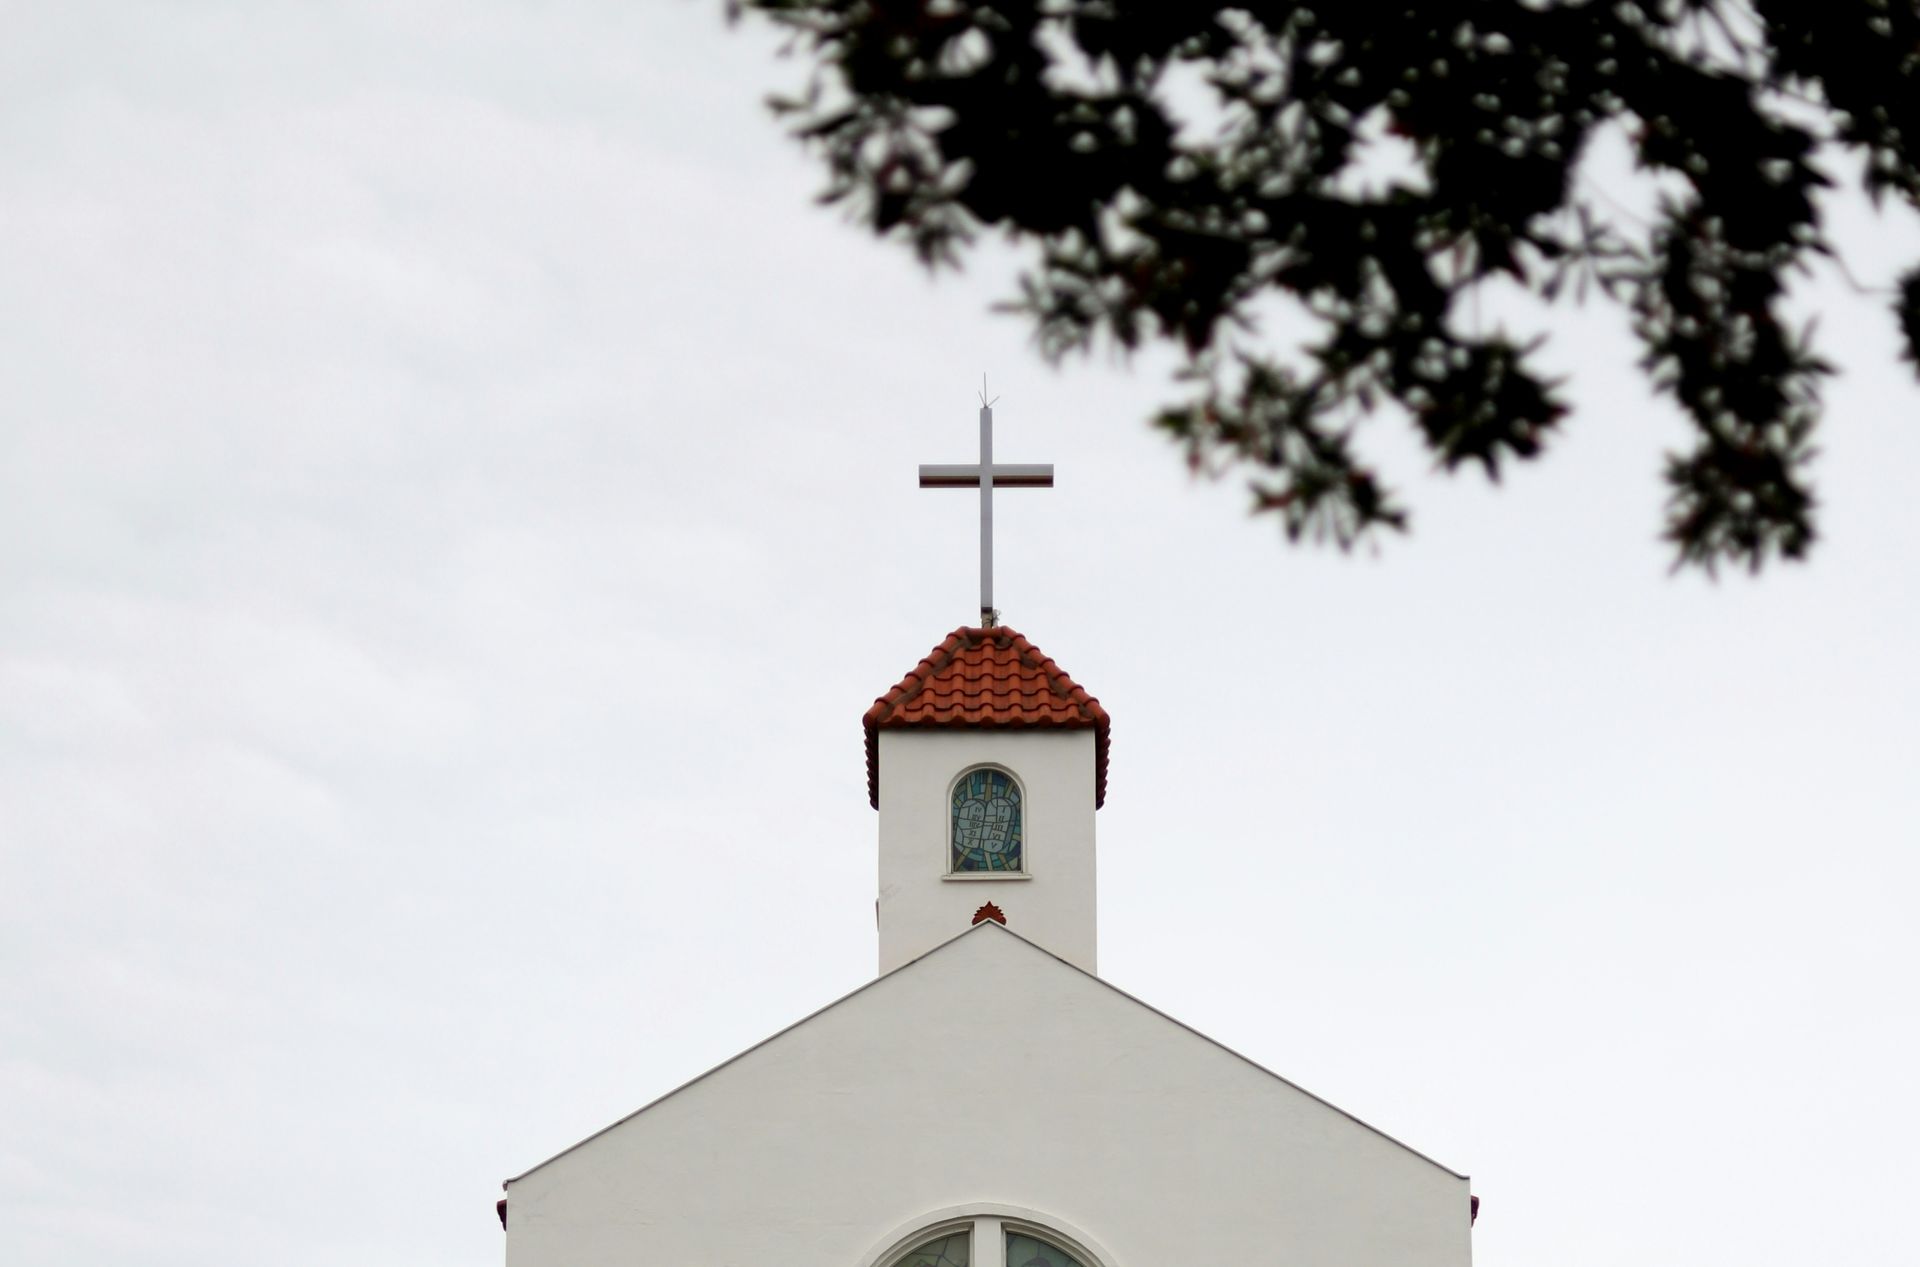 Kors på toppen af en kirke